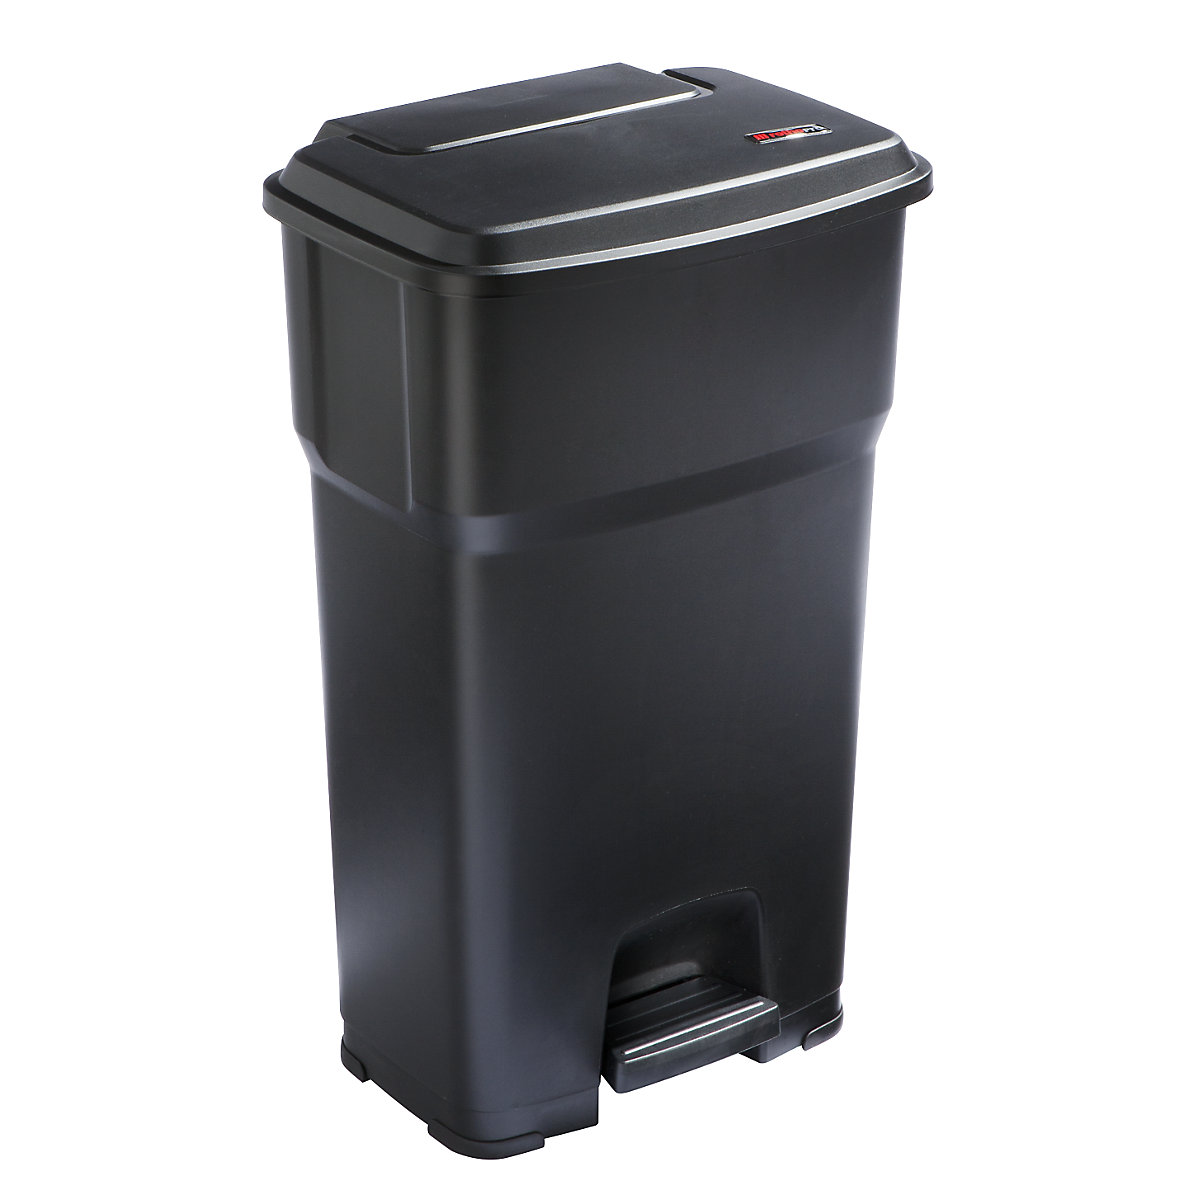 Coletor de lixo com pedal HERA – rothopro, volume 85 l, LxAxP 490 x 790 x 390 mm, preto-8